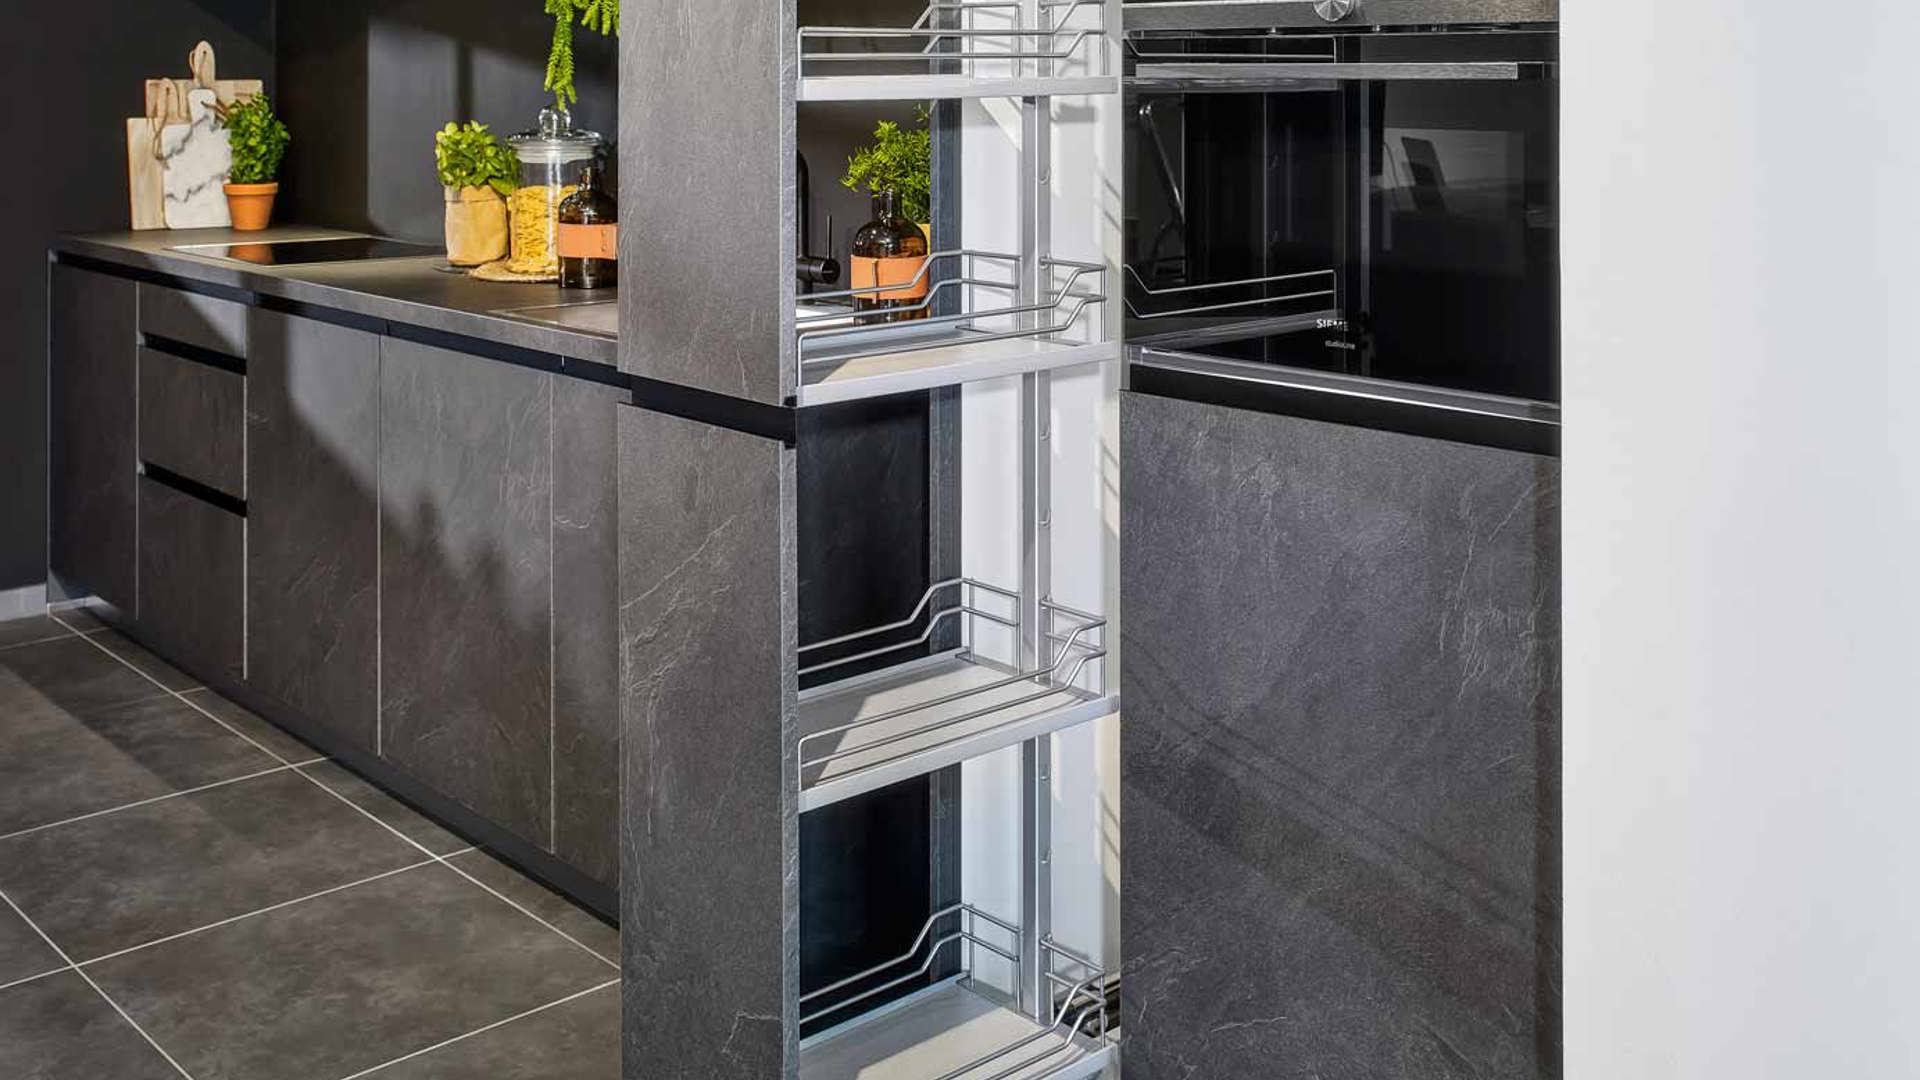 Deze keuken in leisteen grijs heeft een losstaande kast met apothekerskast